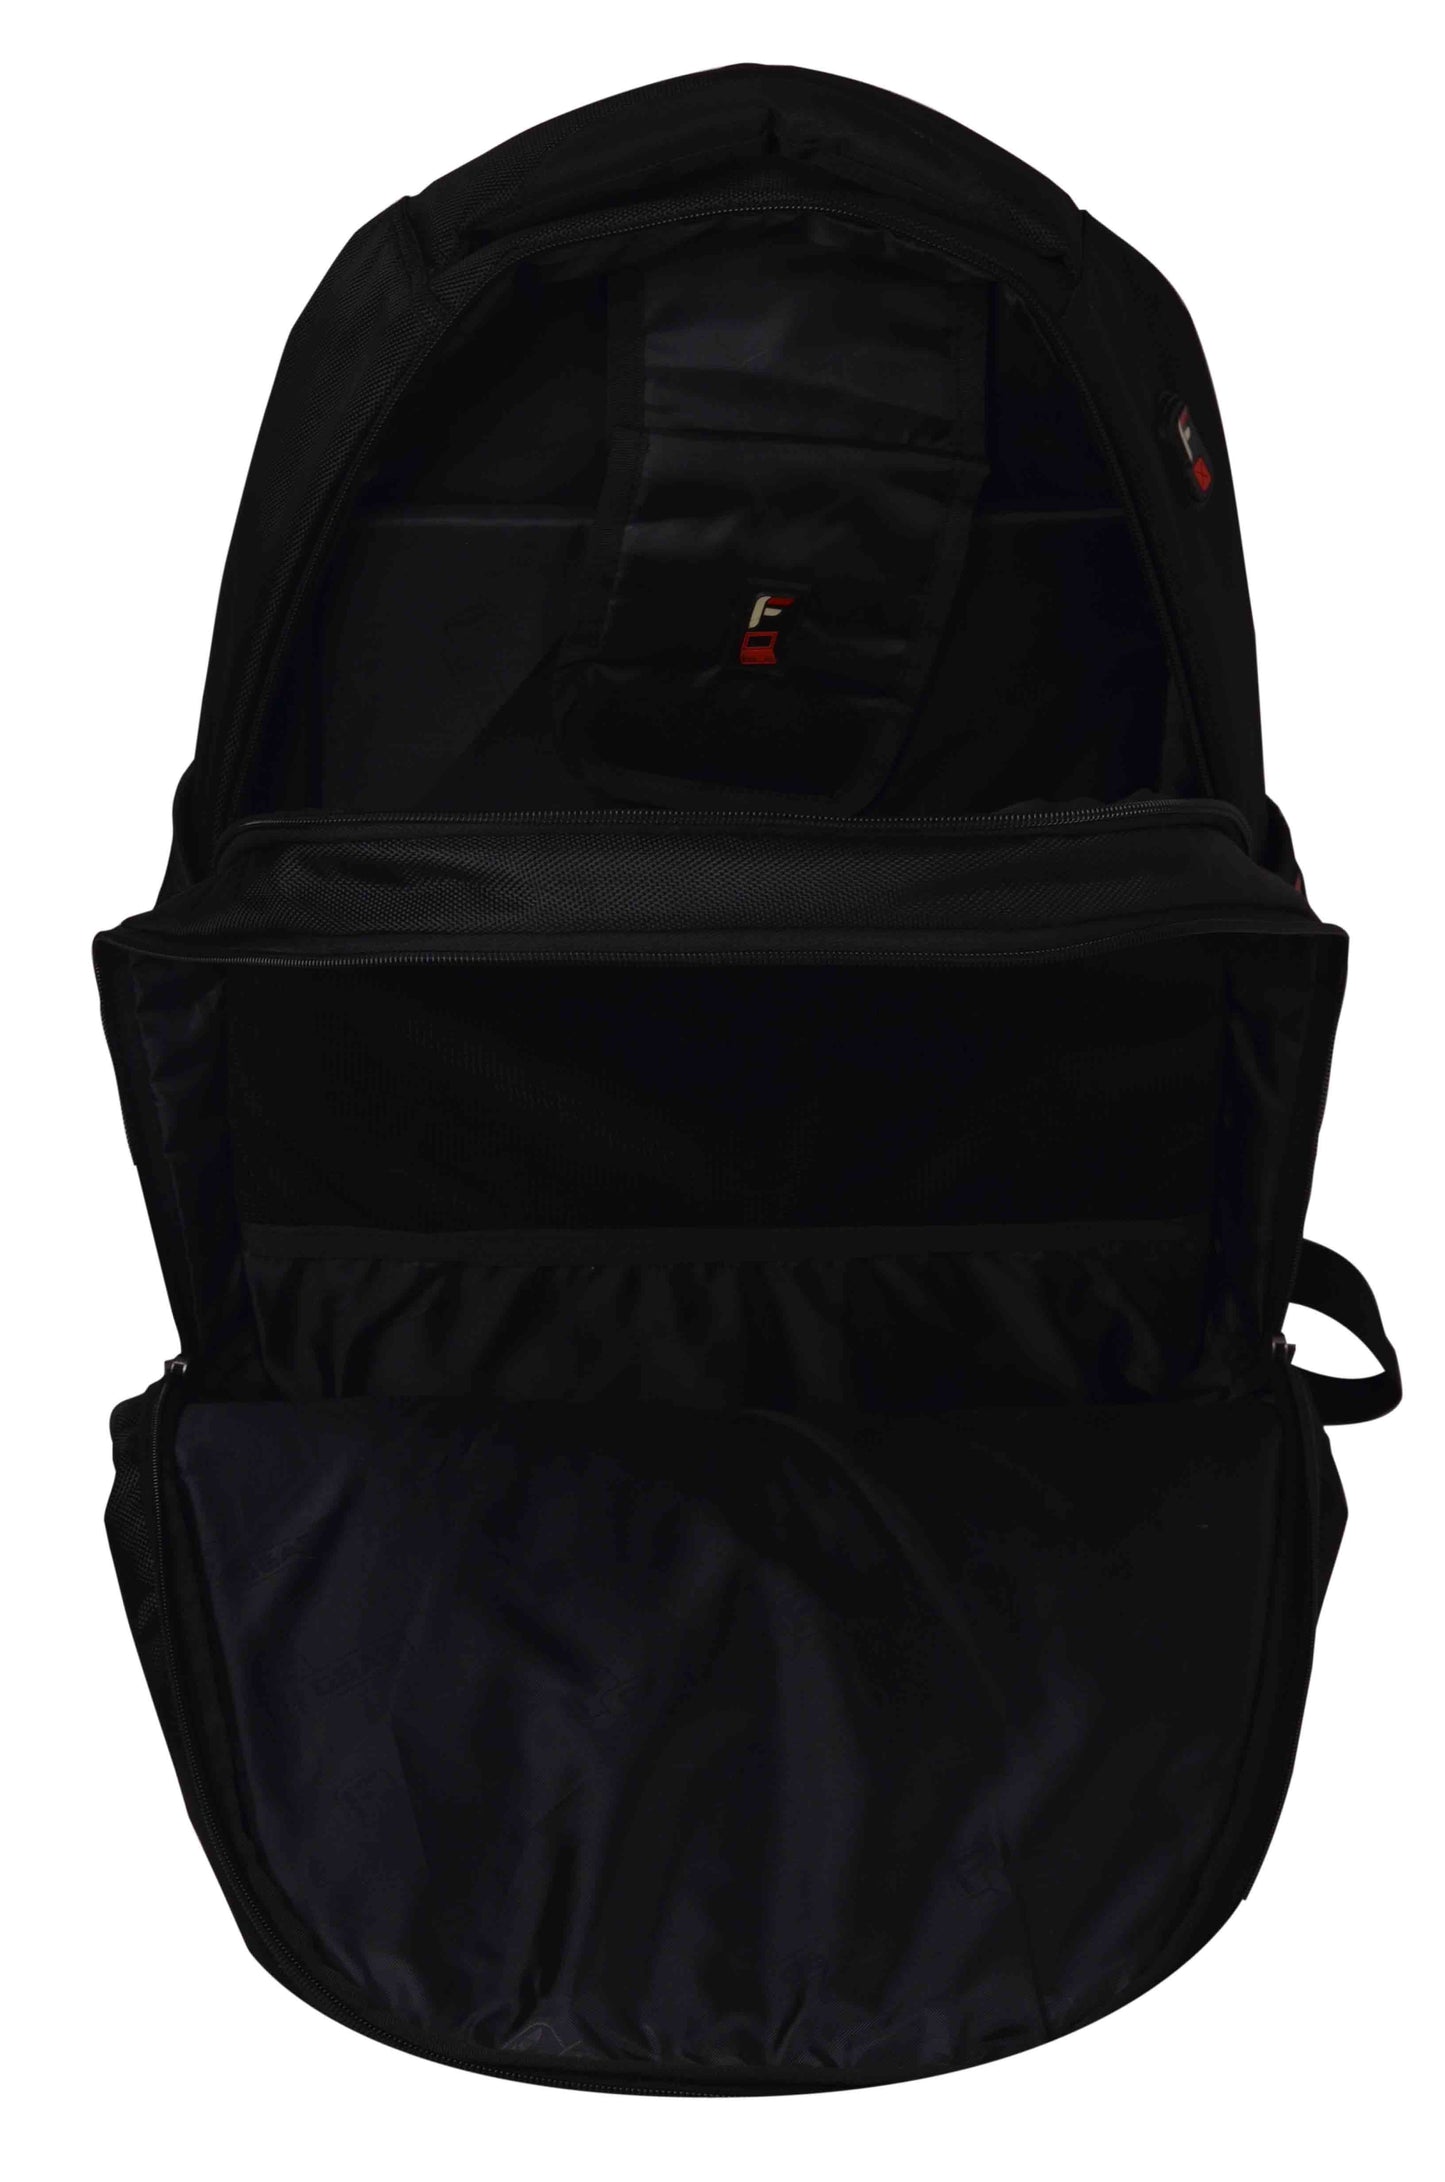 Booster V2 43L Black Laptop Backpack